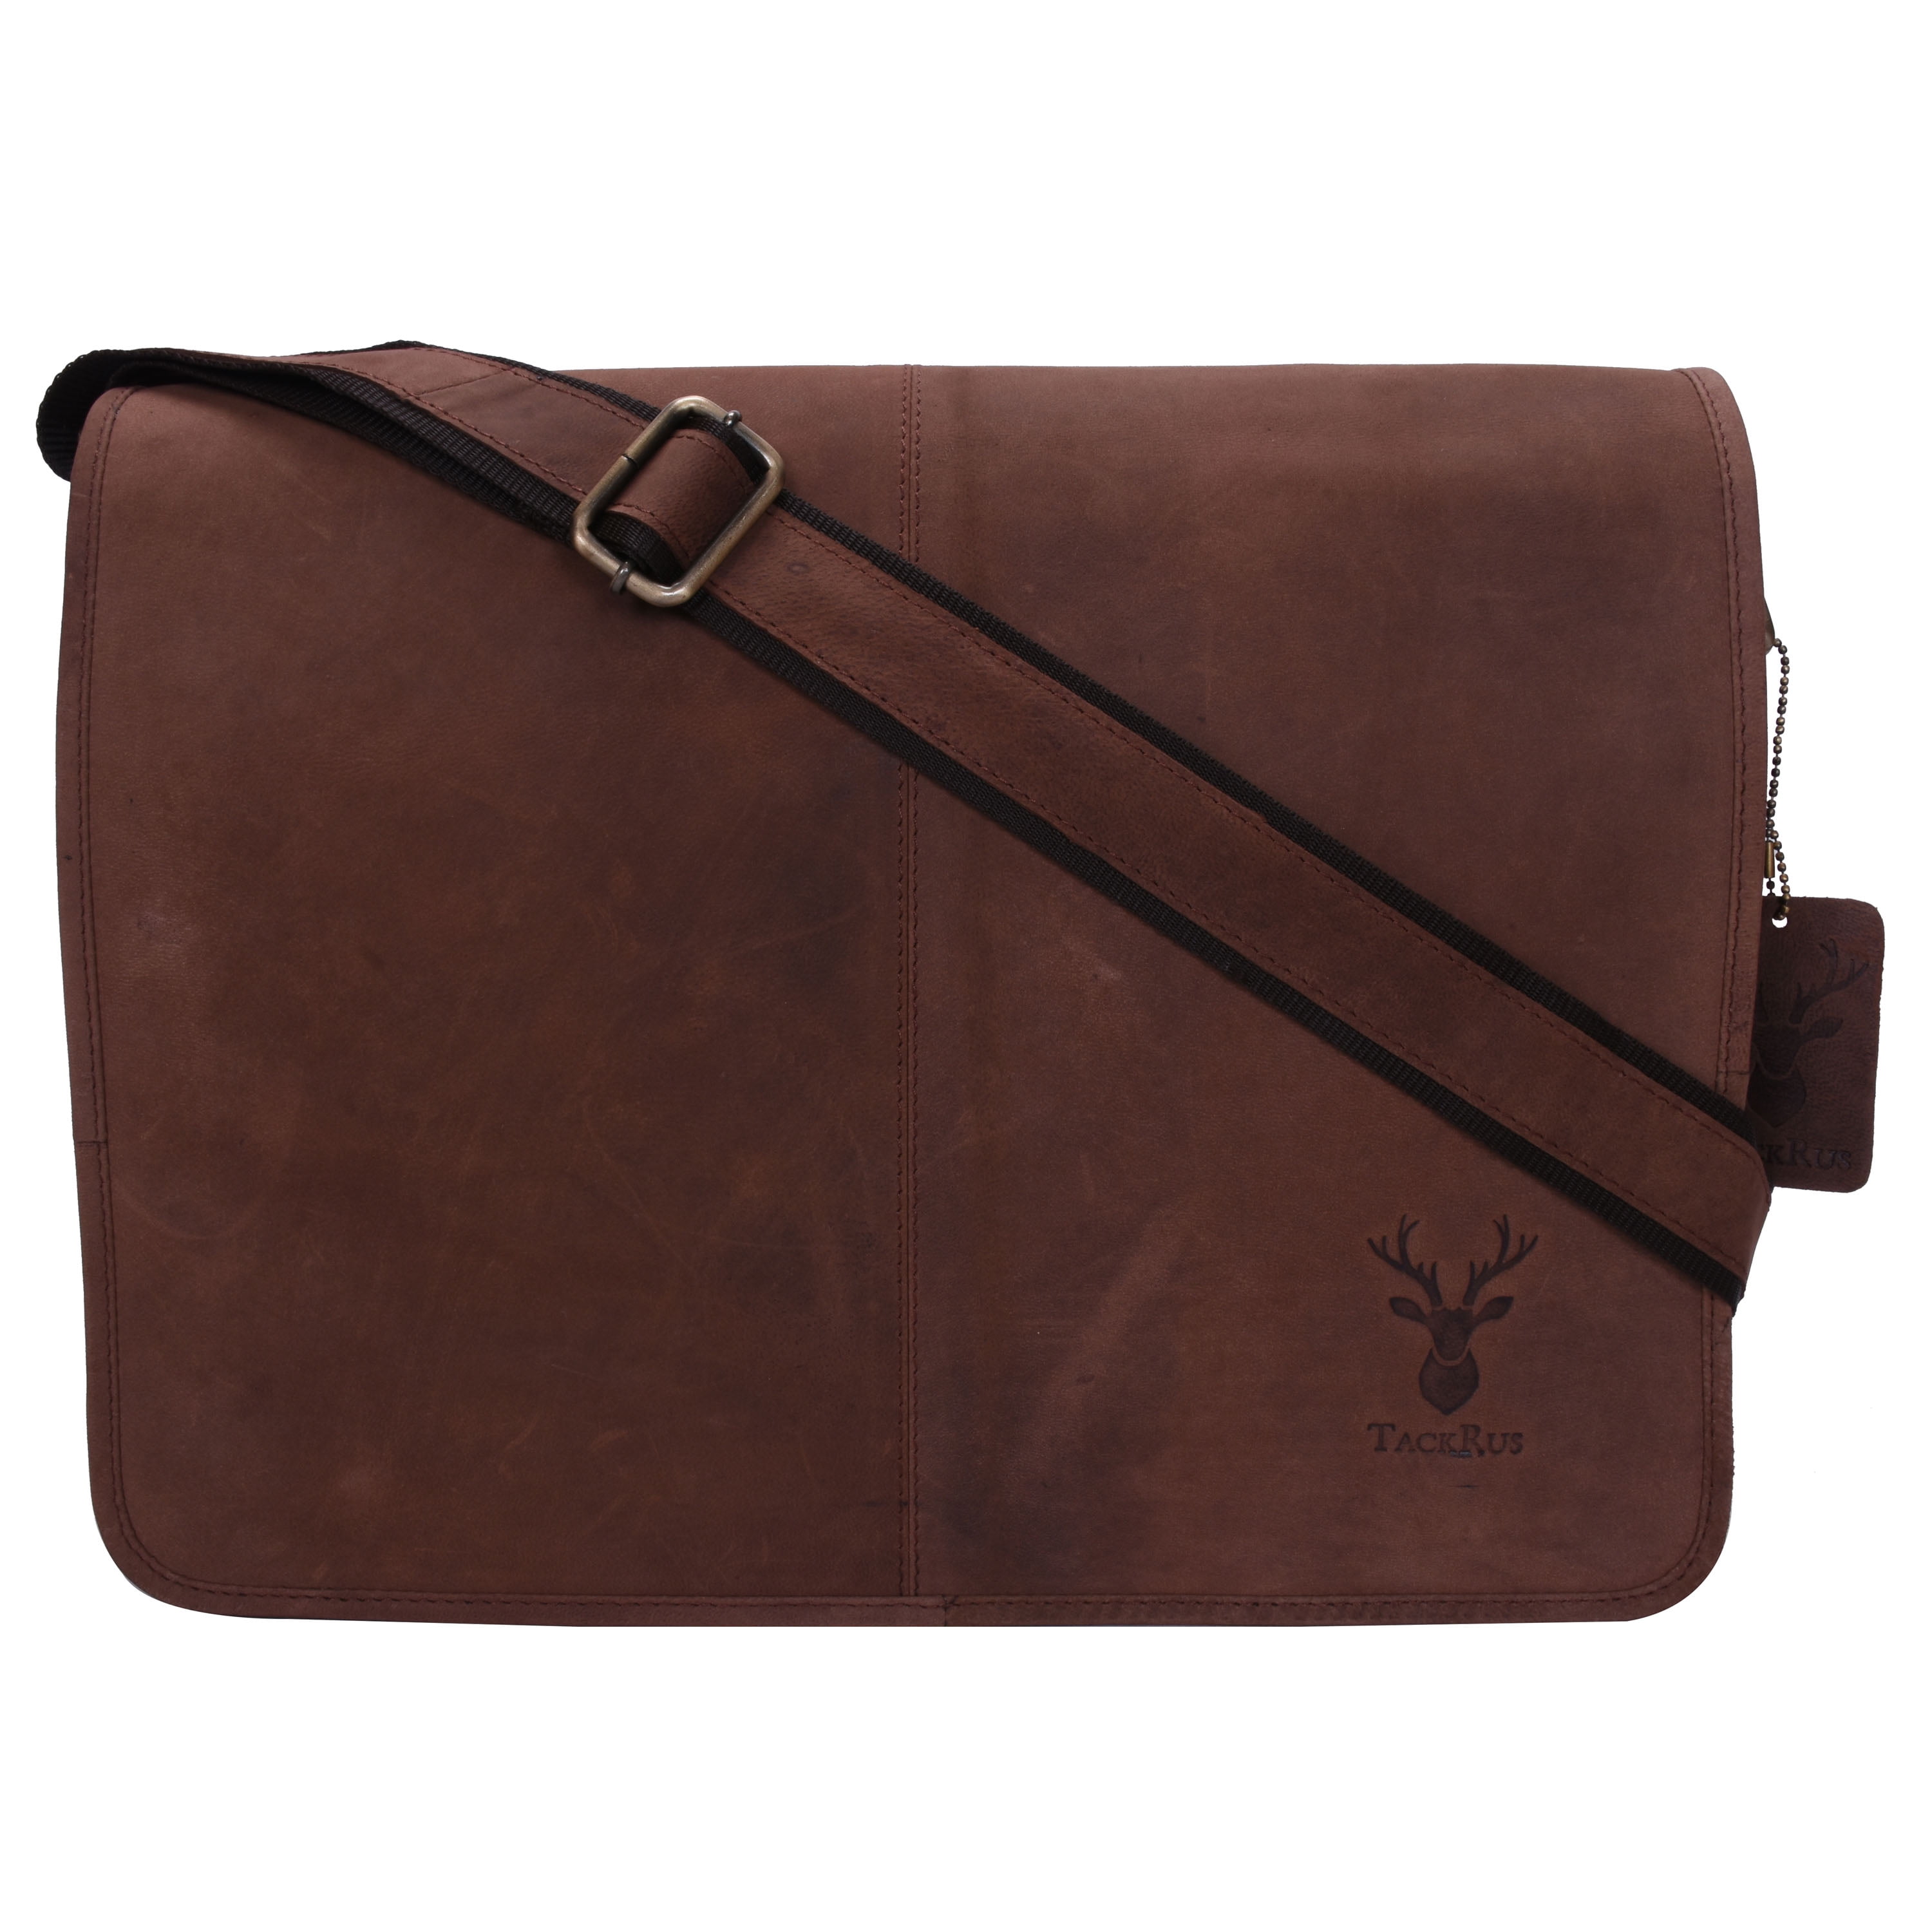 Laptop Messenger Shoulder Bag L 18516 Office Work Organiser Bag TEXAS - Oil Tan Hunter Leather VISCONTI Multiple Pockets 15 Inch Laptop Bag